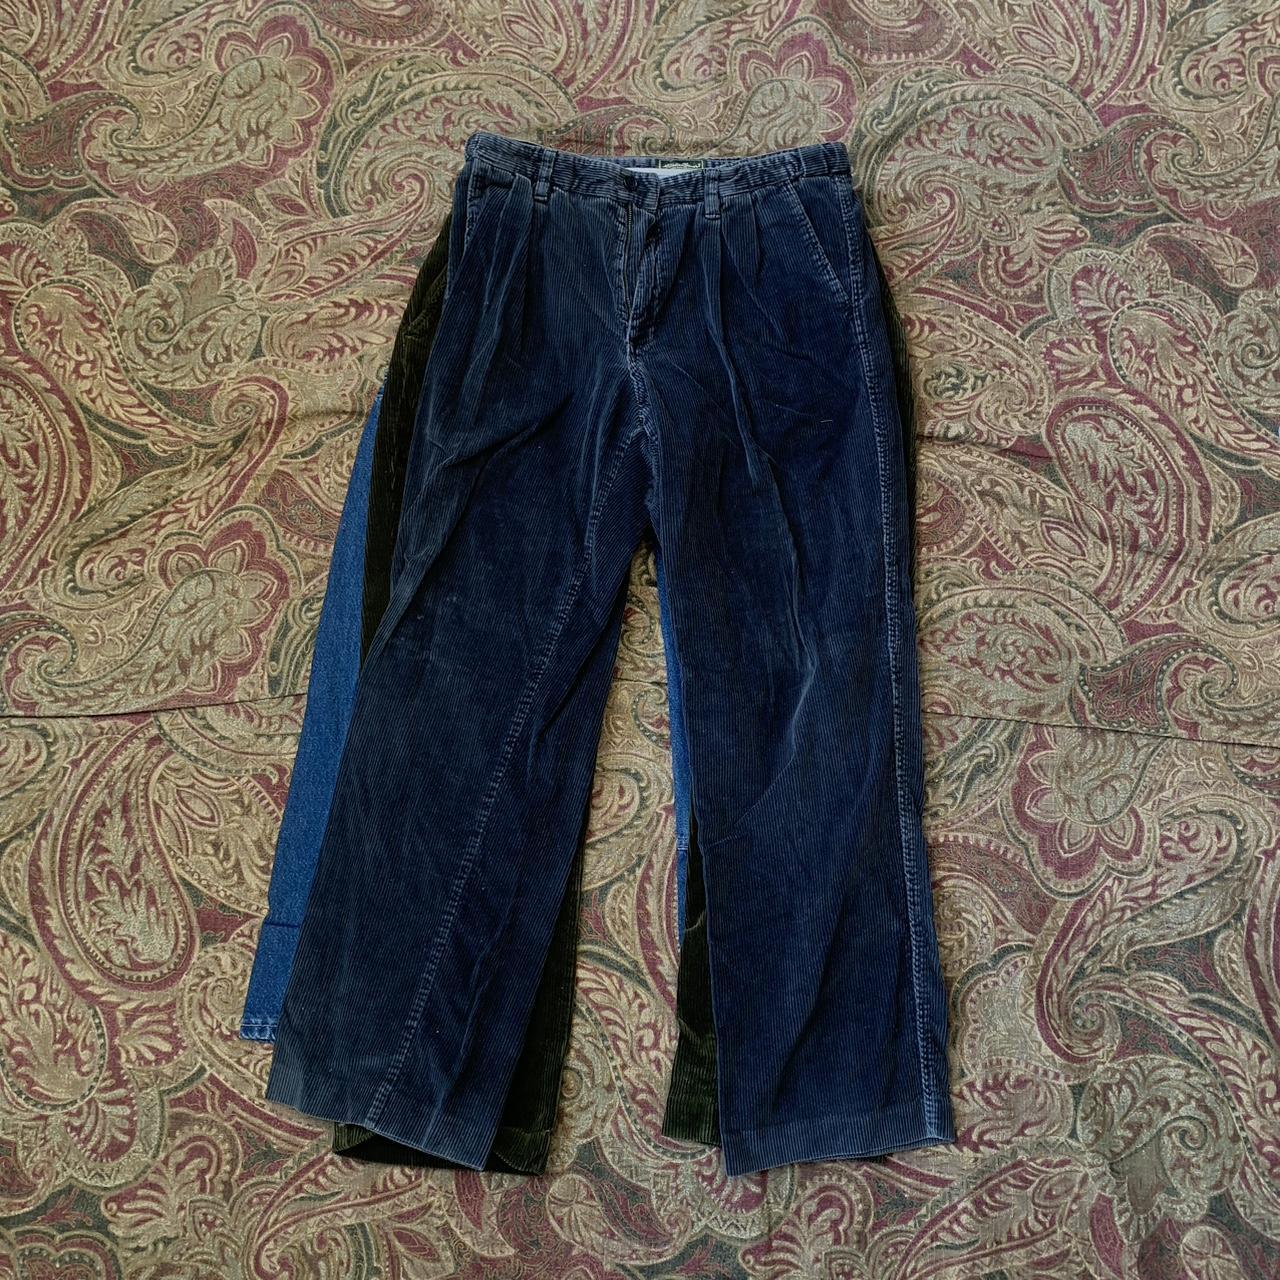 Mens Modern Stretch Fit Flat Front Casual Pants (Sail Red, Size 38W x 34L)  - Walmart.com